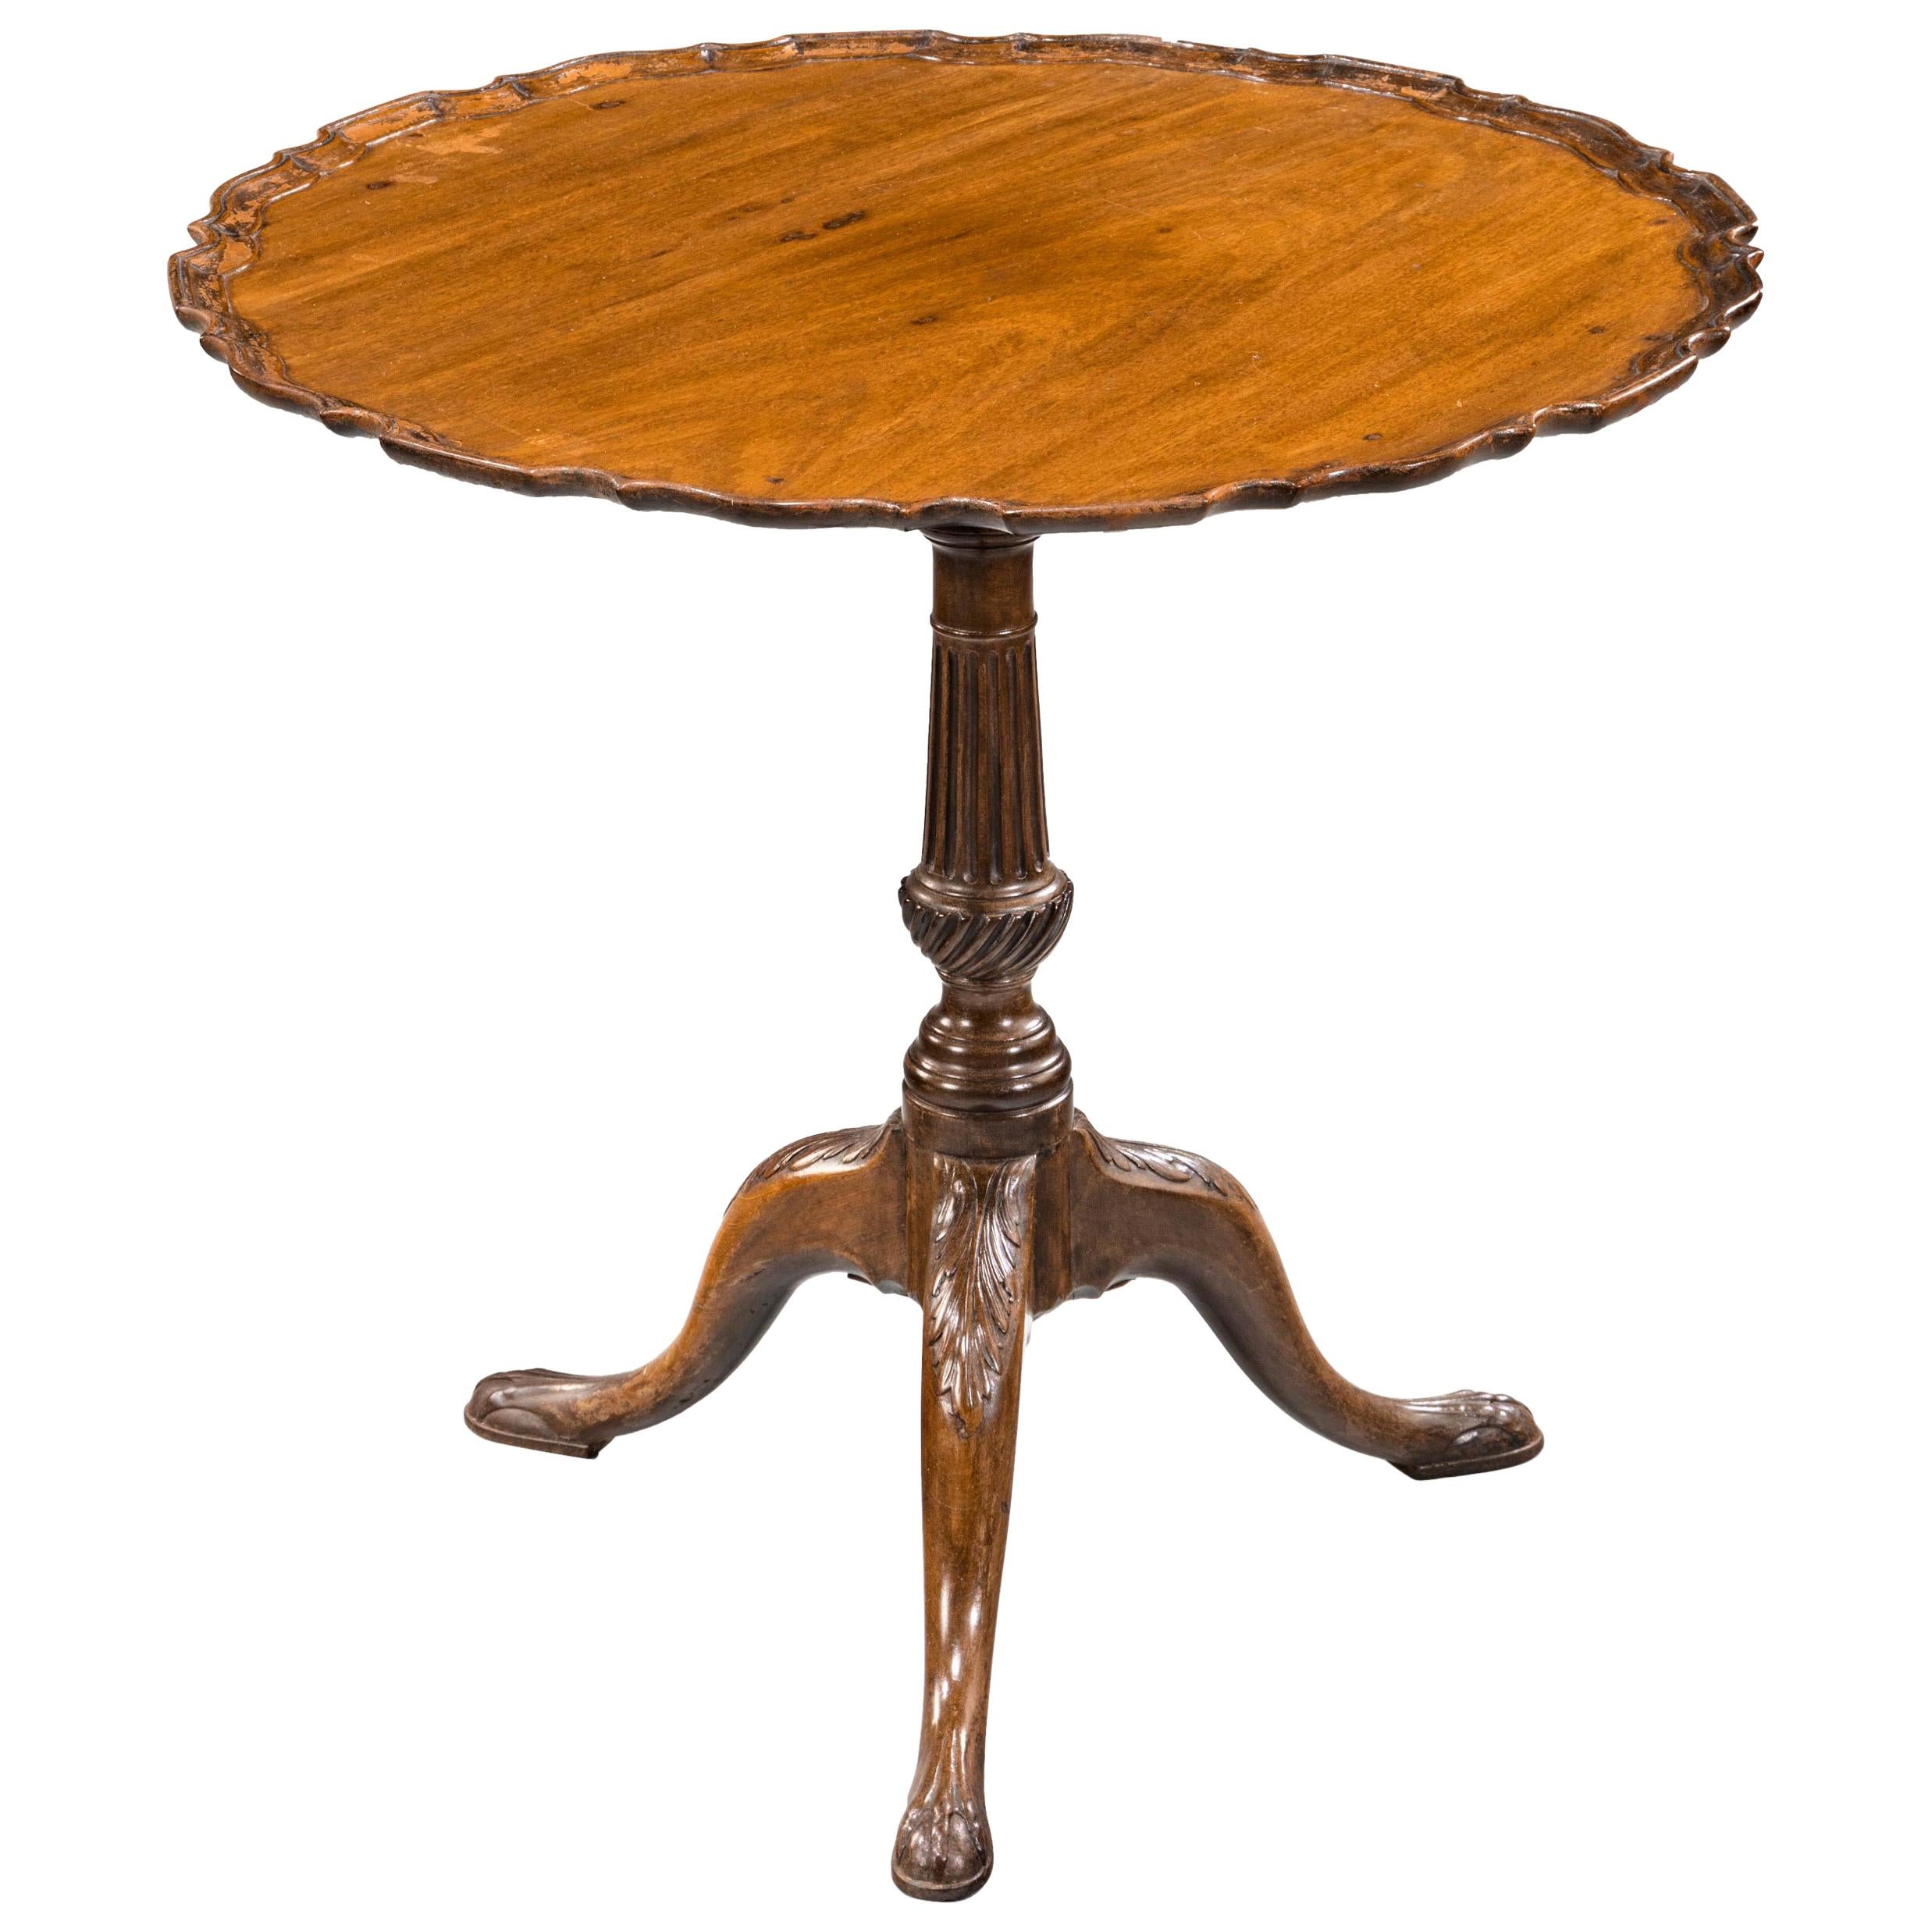 Good George III Period Mahogany Pie-Crust Tilt Table